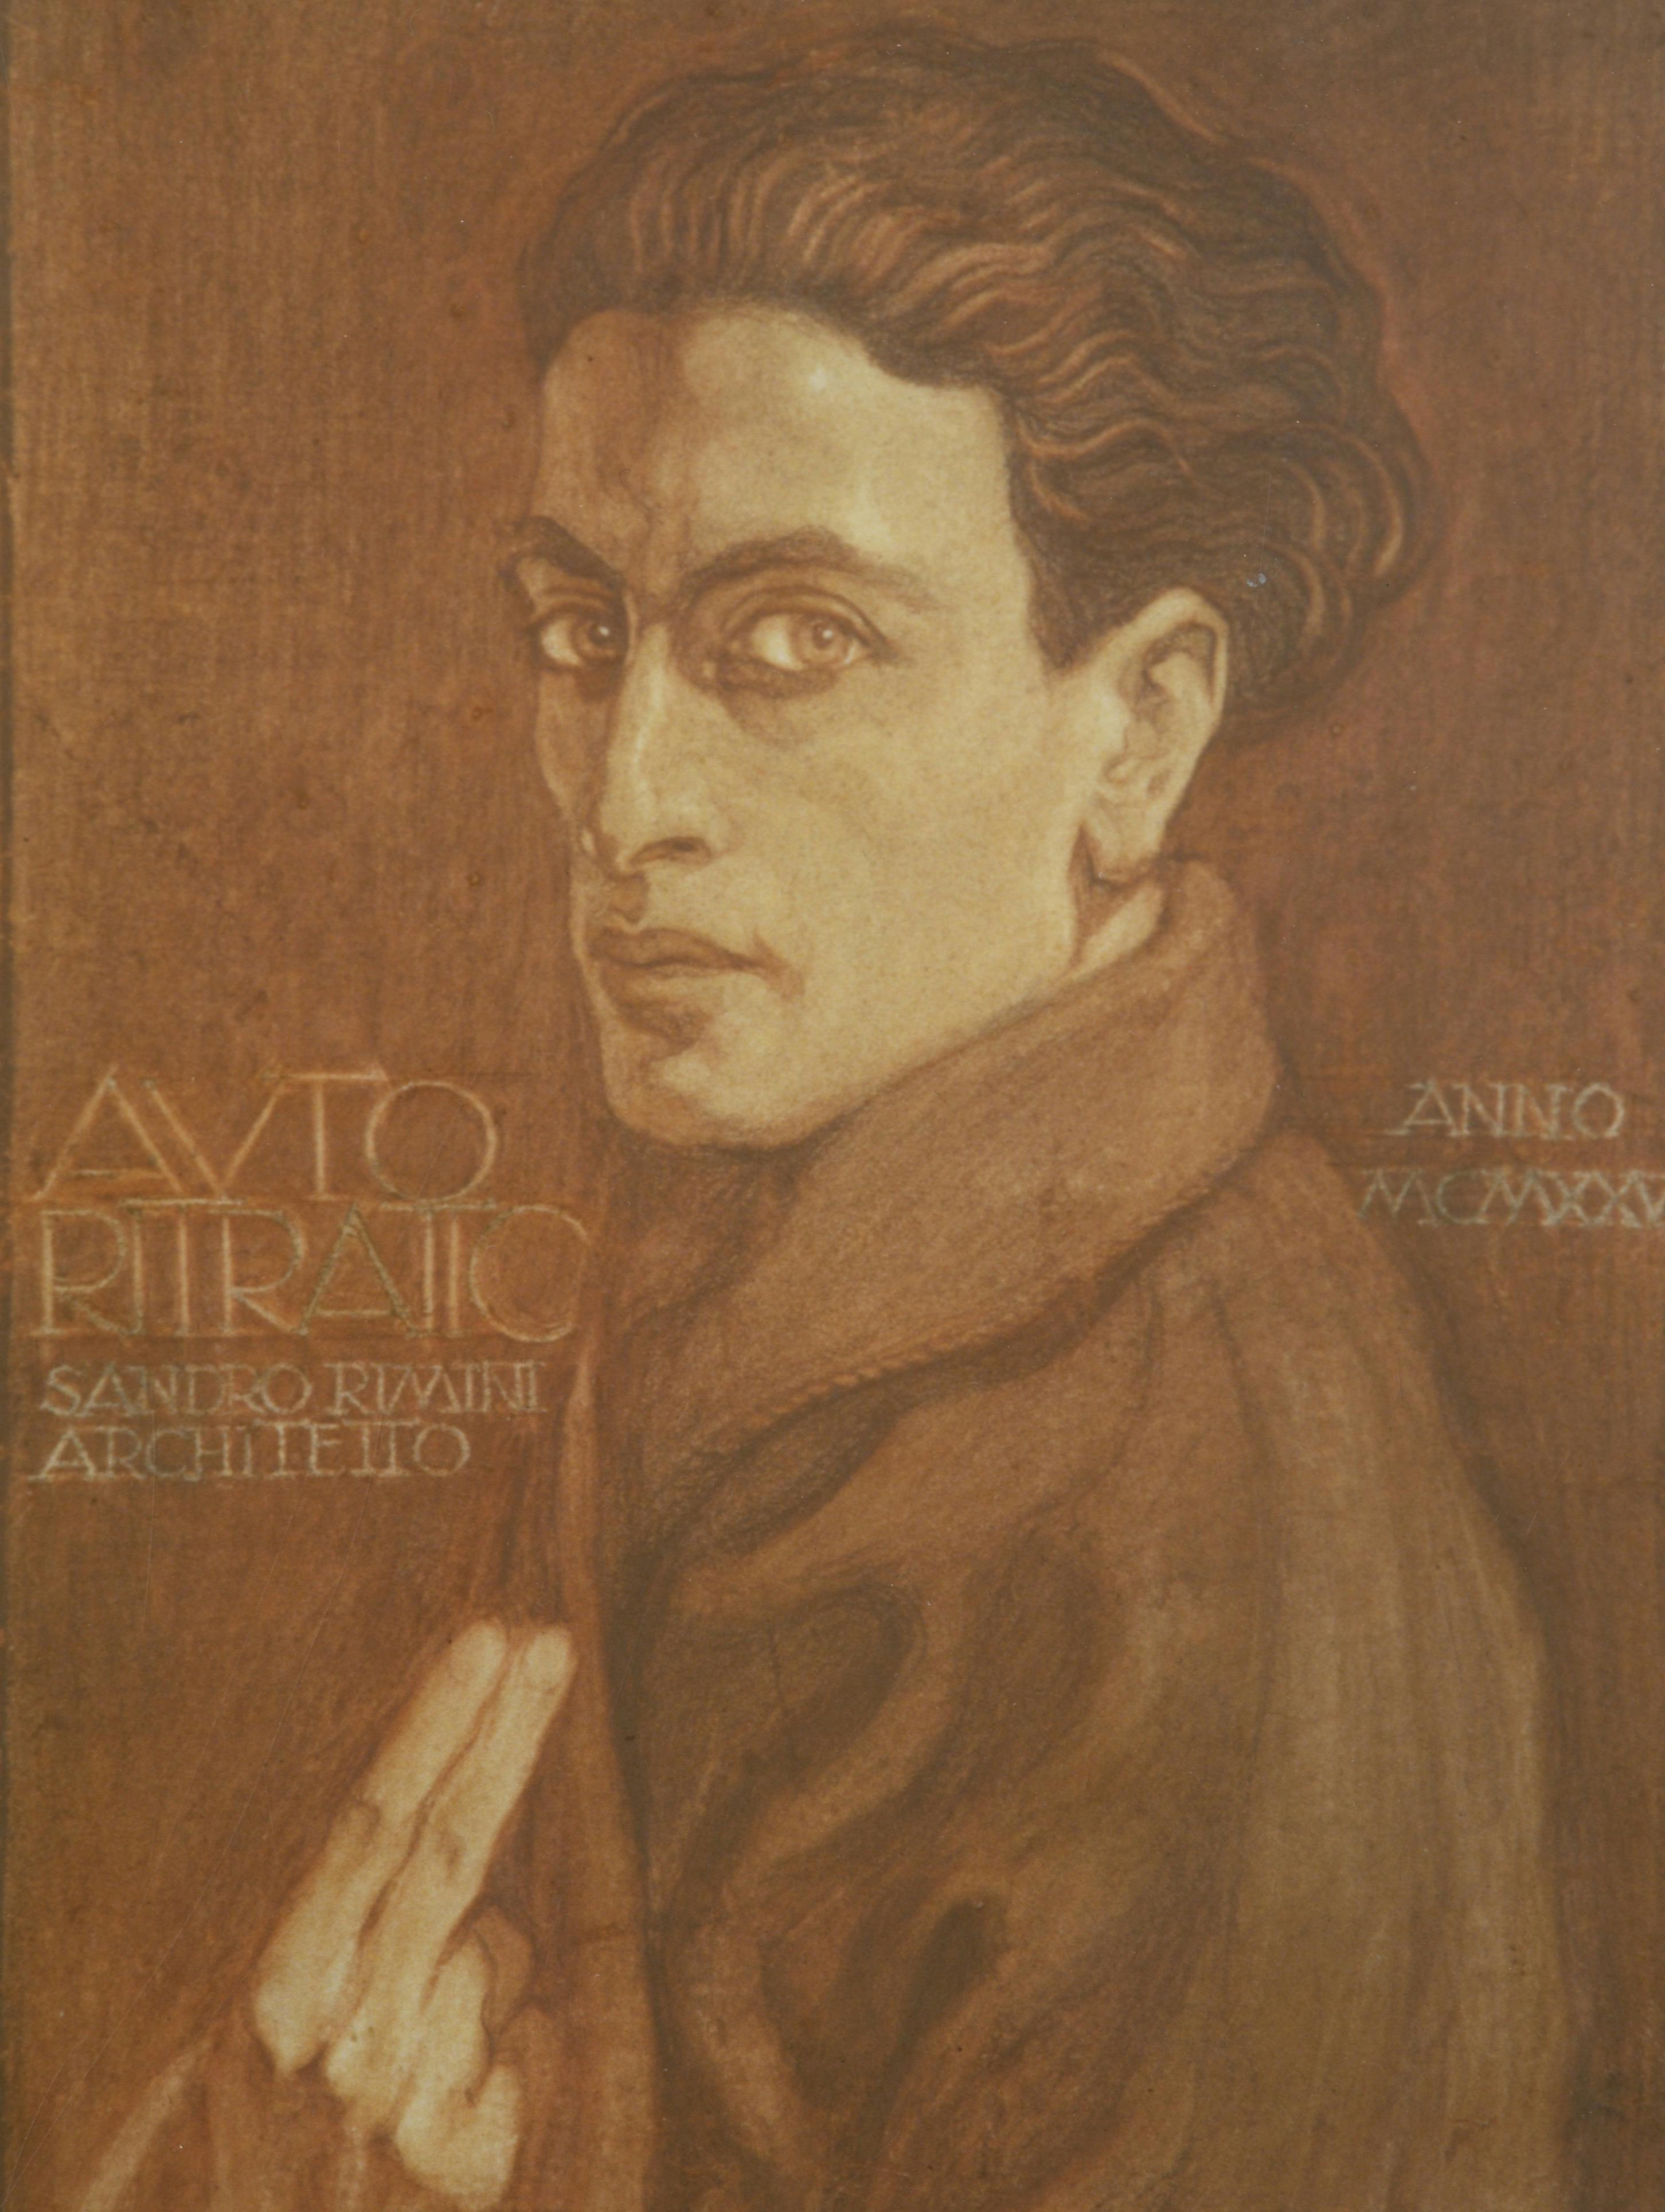 Alessandro Rimini, self portrait, 1925